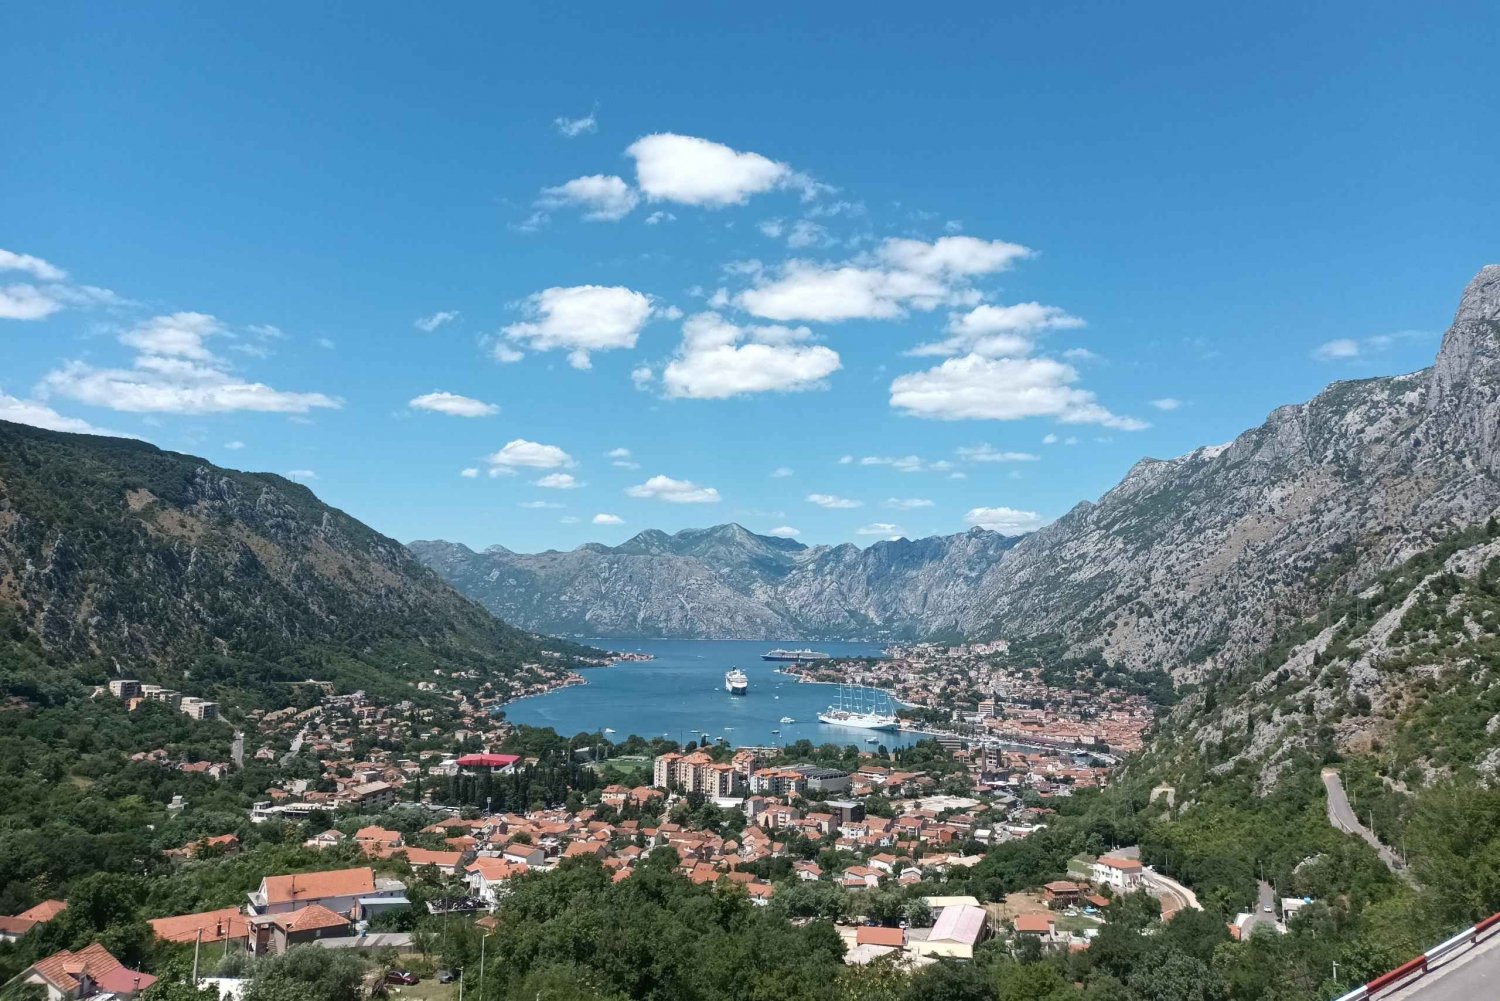 Highlights of Kotor, Perast & Budva